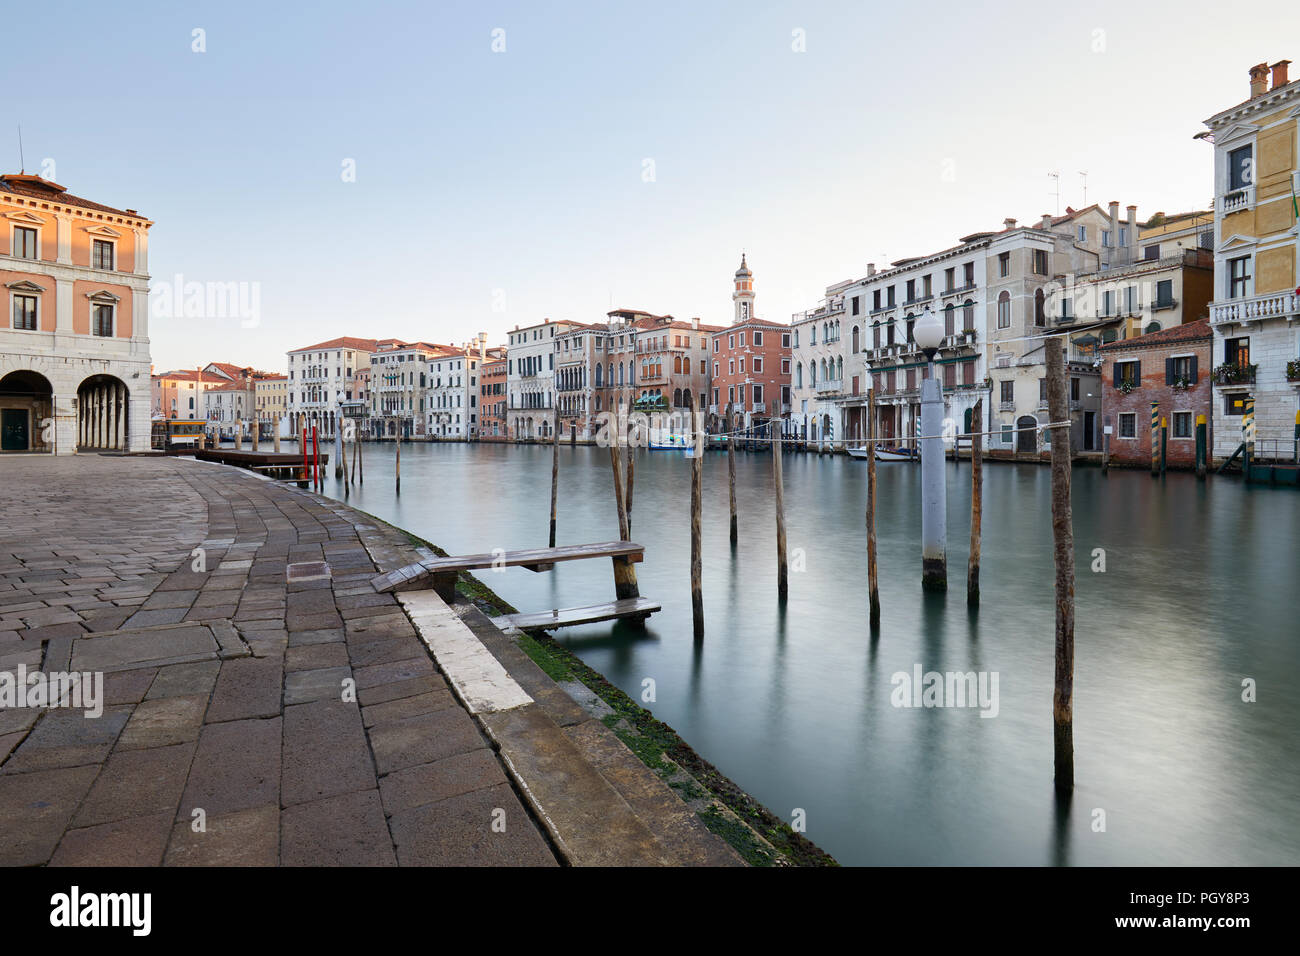 Grand Canal de Venise et sur les quais, personne n'en début de matinée en Italie Banque D'Images